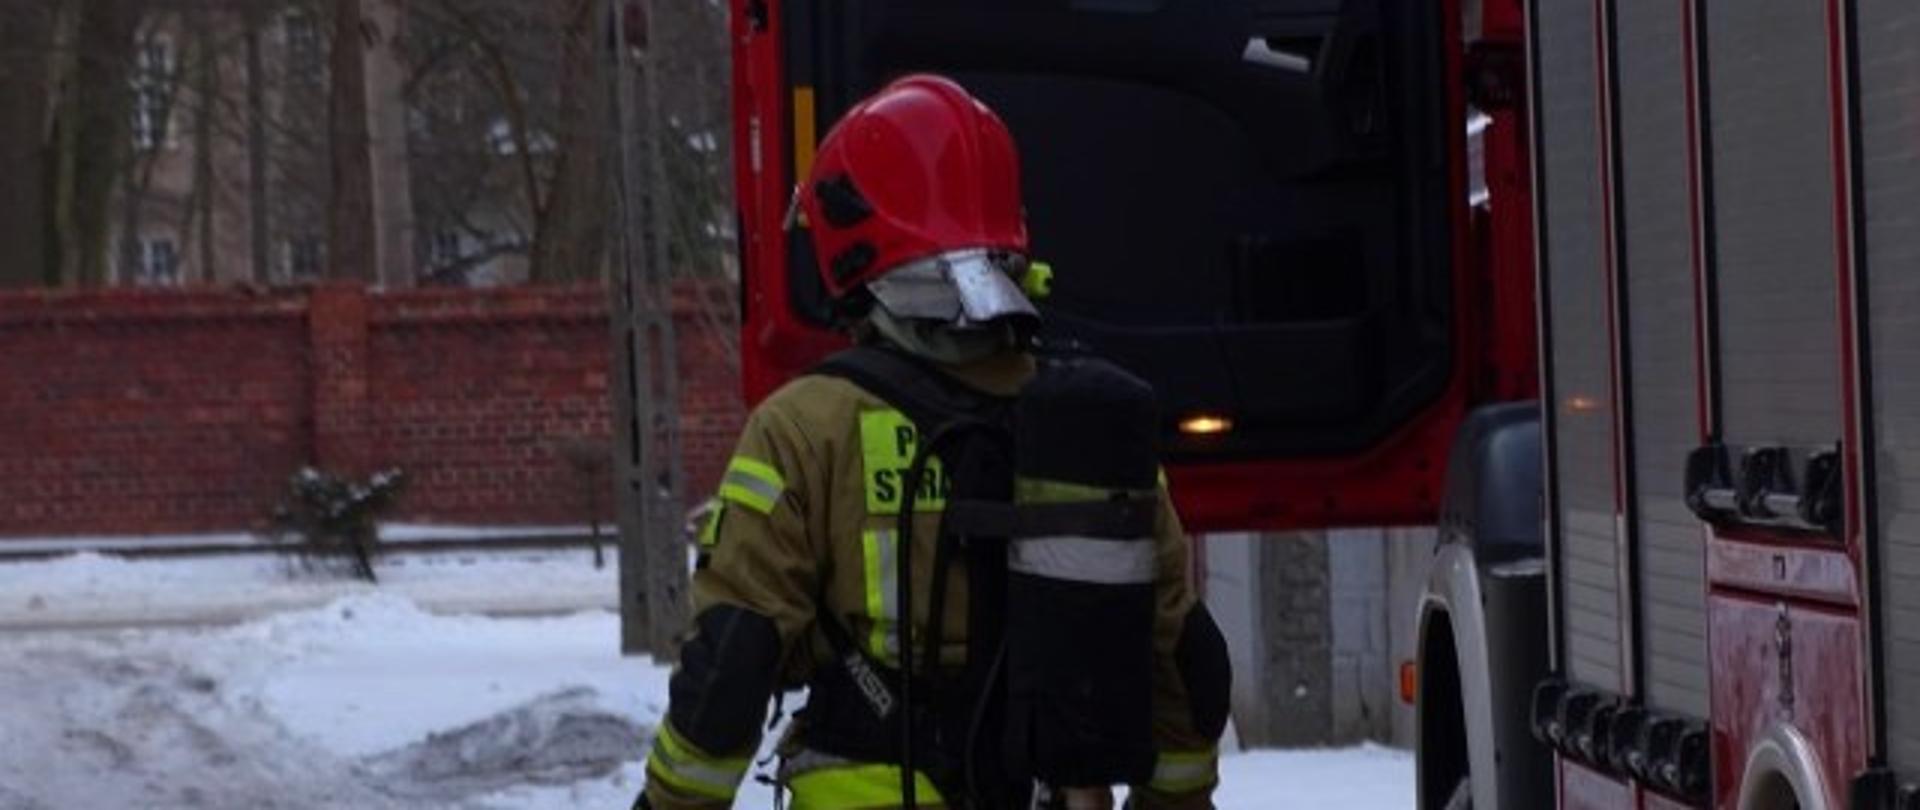 Po prawej samochód pożarniczy, strażak odwrócony tyłem w aparacie powietrznym.